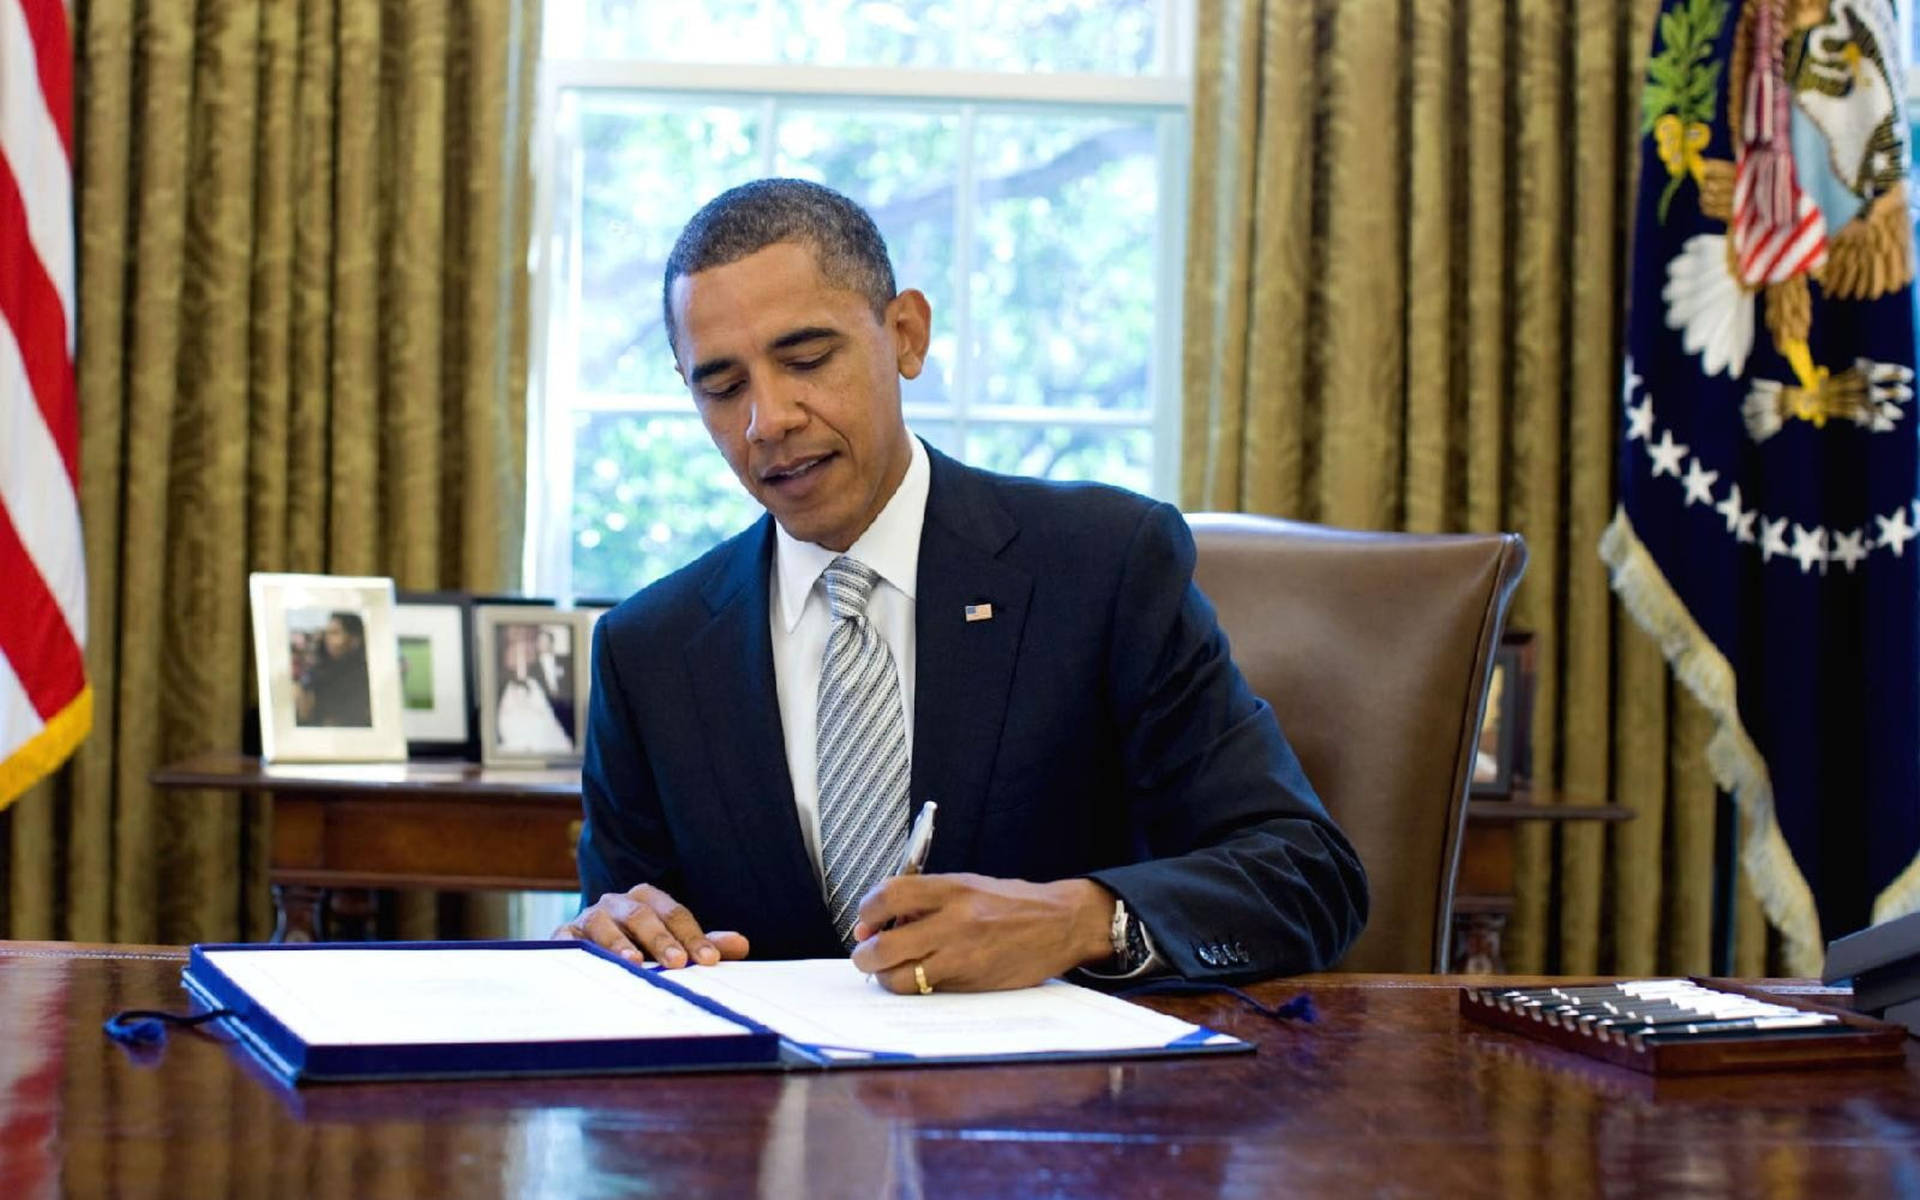 Barack Obama In Office At Washington Background